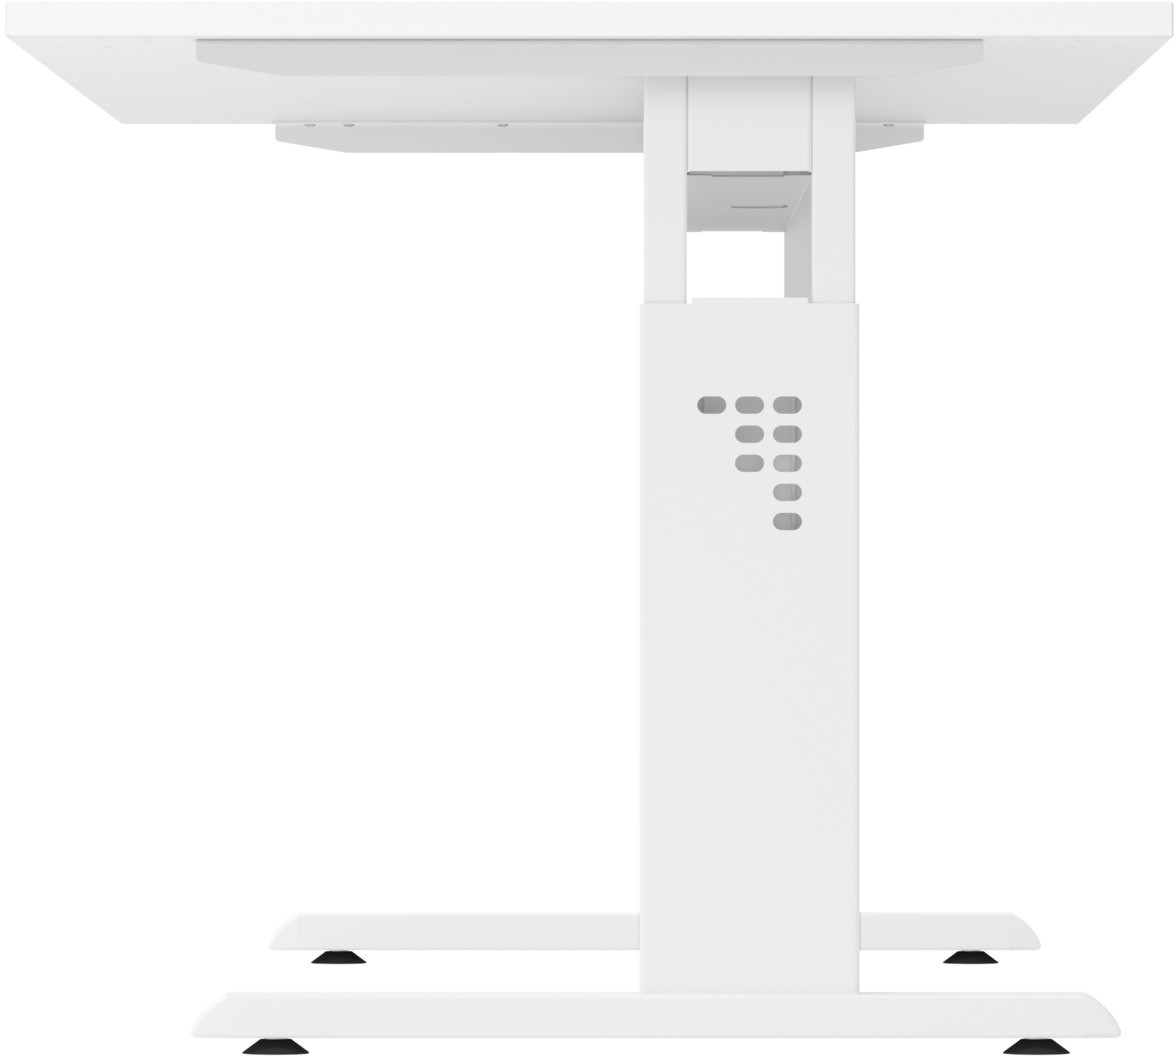 APOLLO Table de bureau ZERO 120x67cm VOS612/W/W weiss/weiss